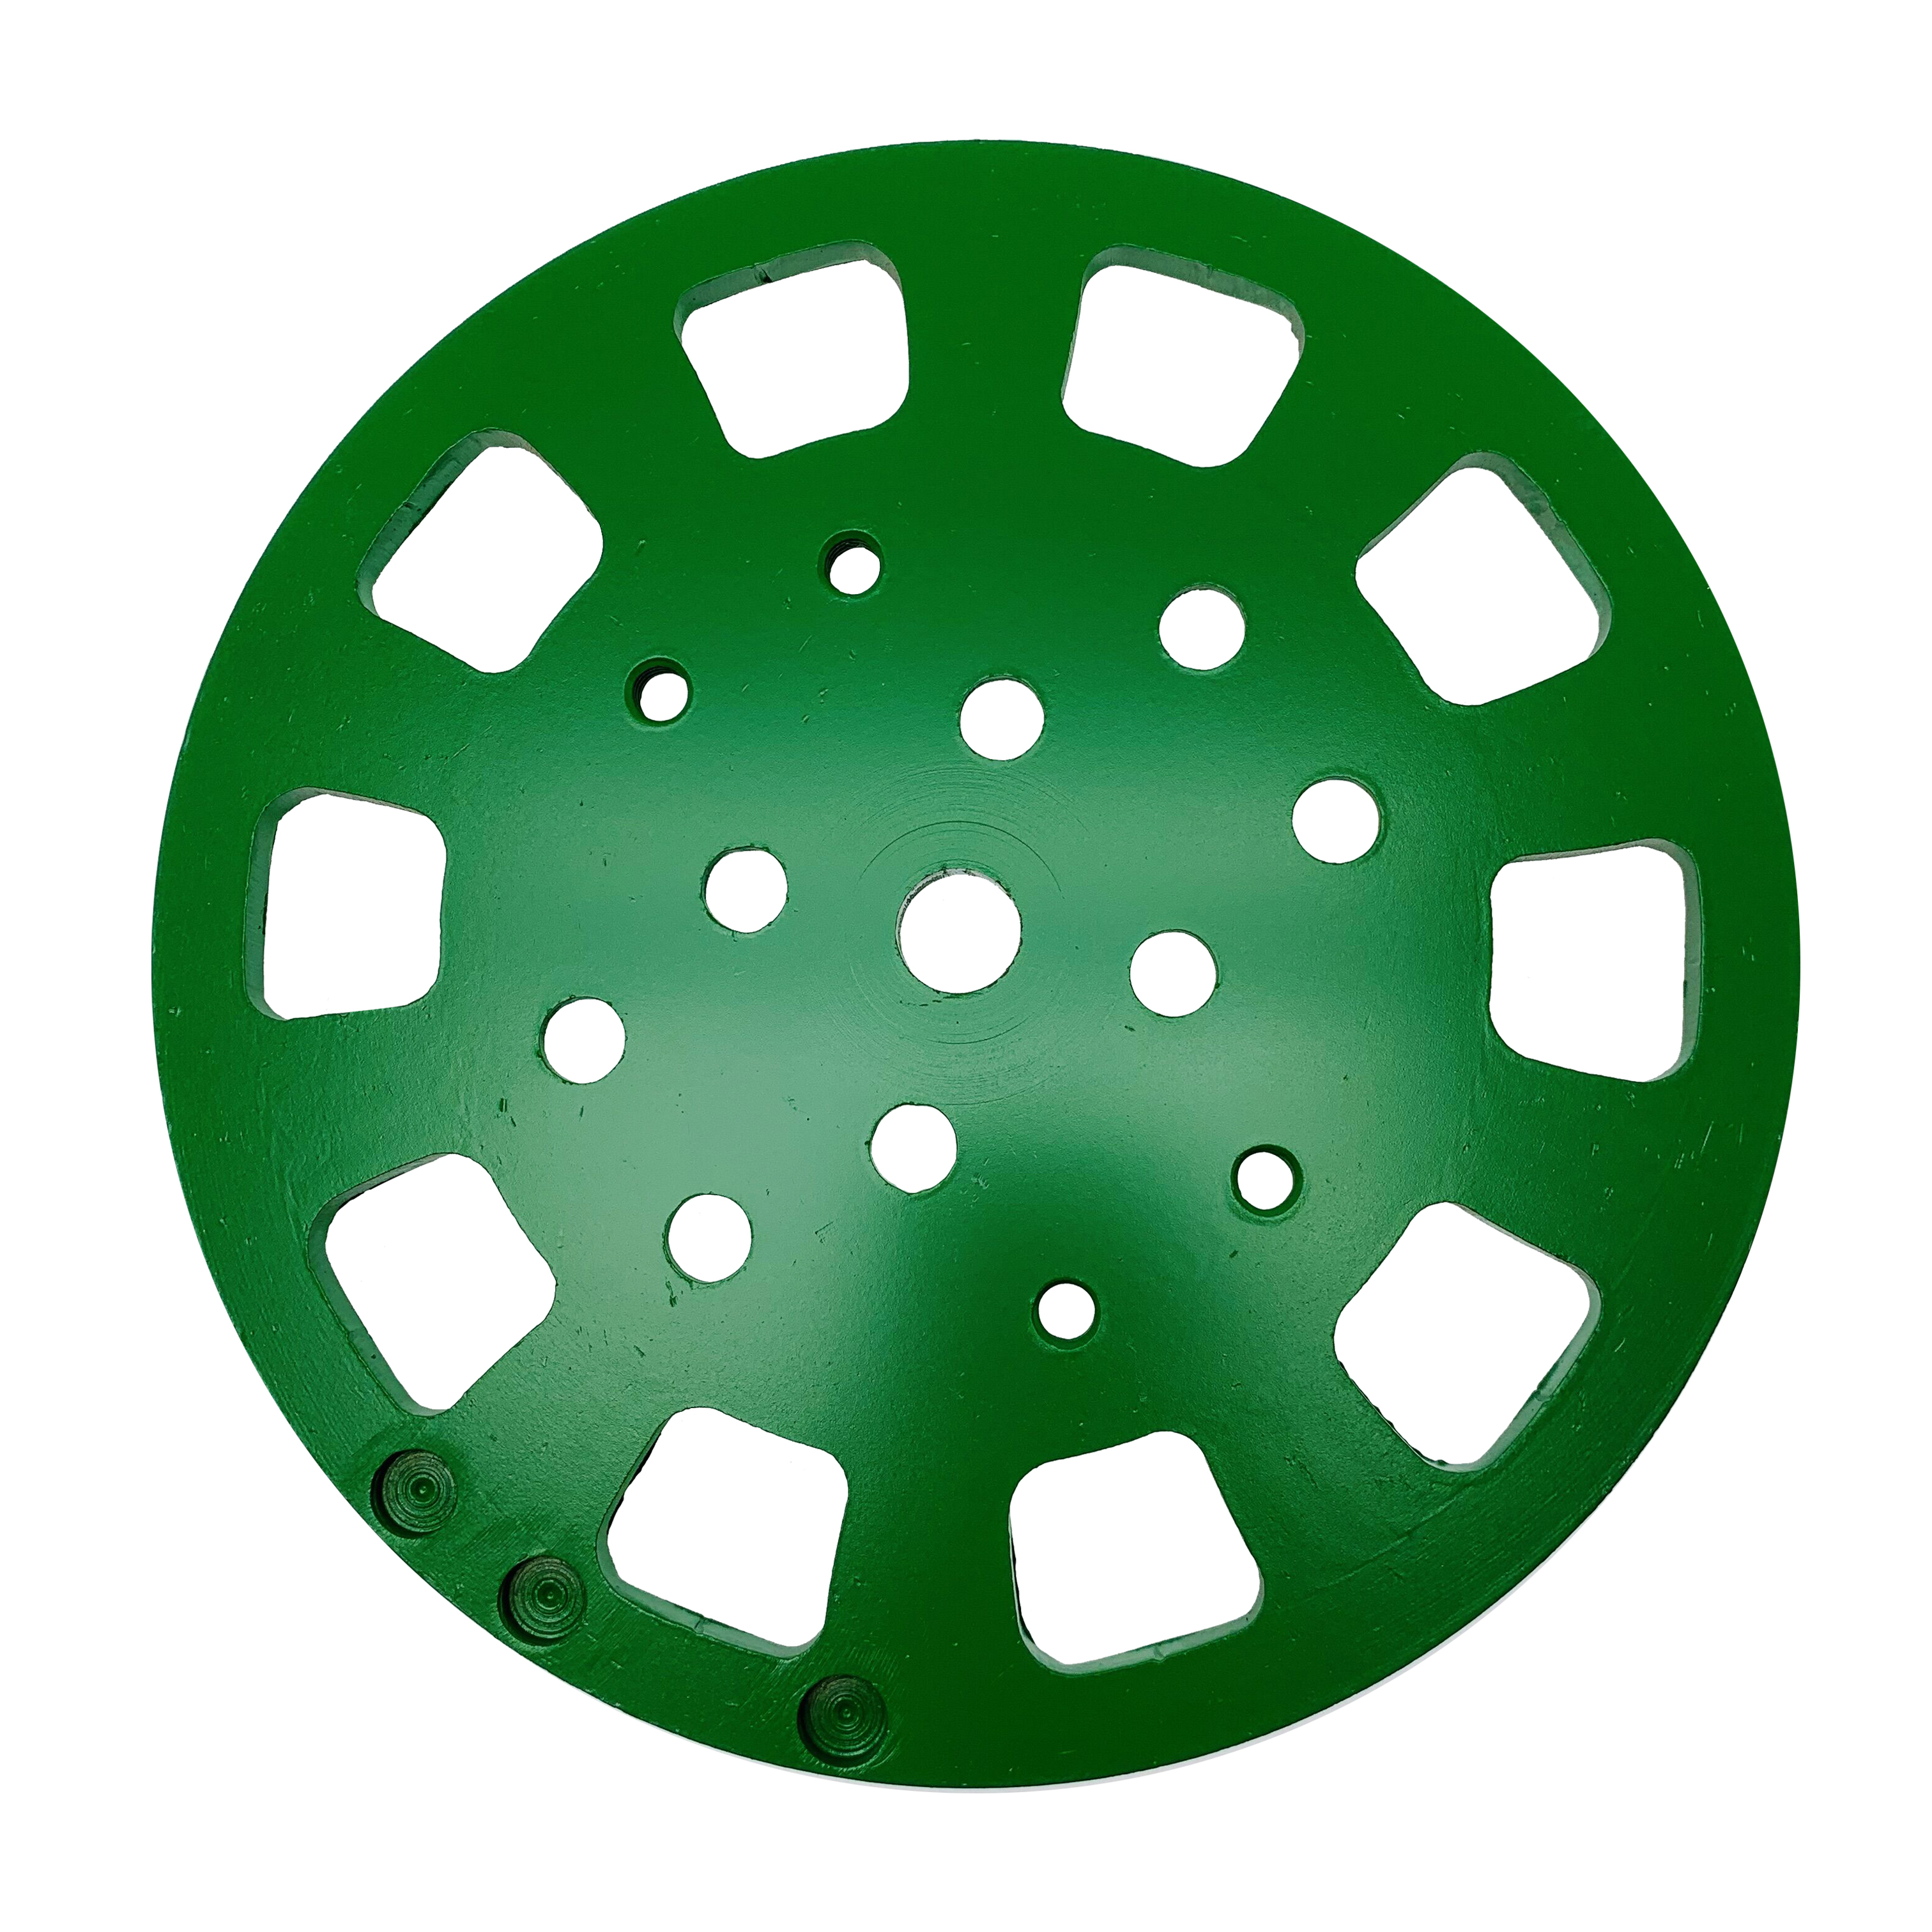 Паяный 10-дюймовый шлифовальный круг с зеленым алмазным диском премиум-класса 250 мм для среднего бетонного пола